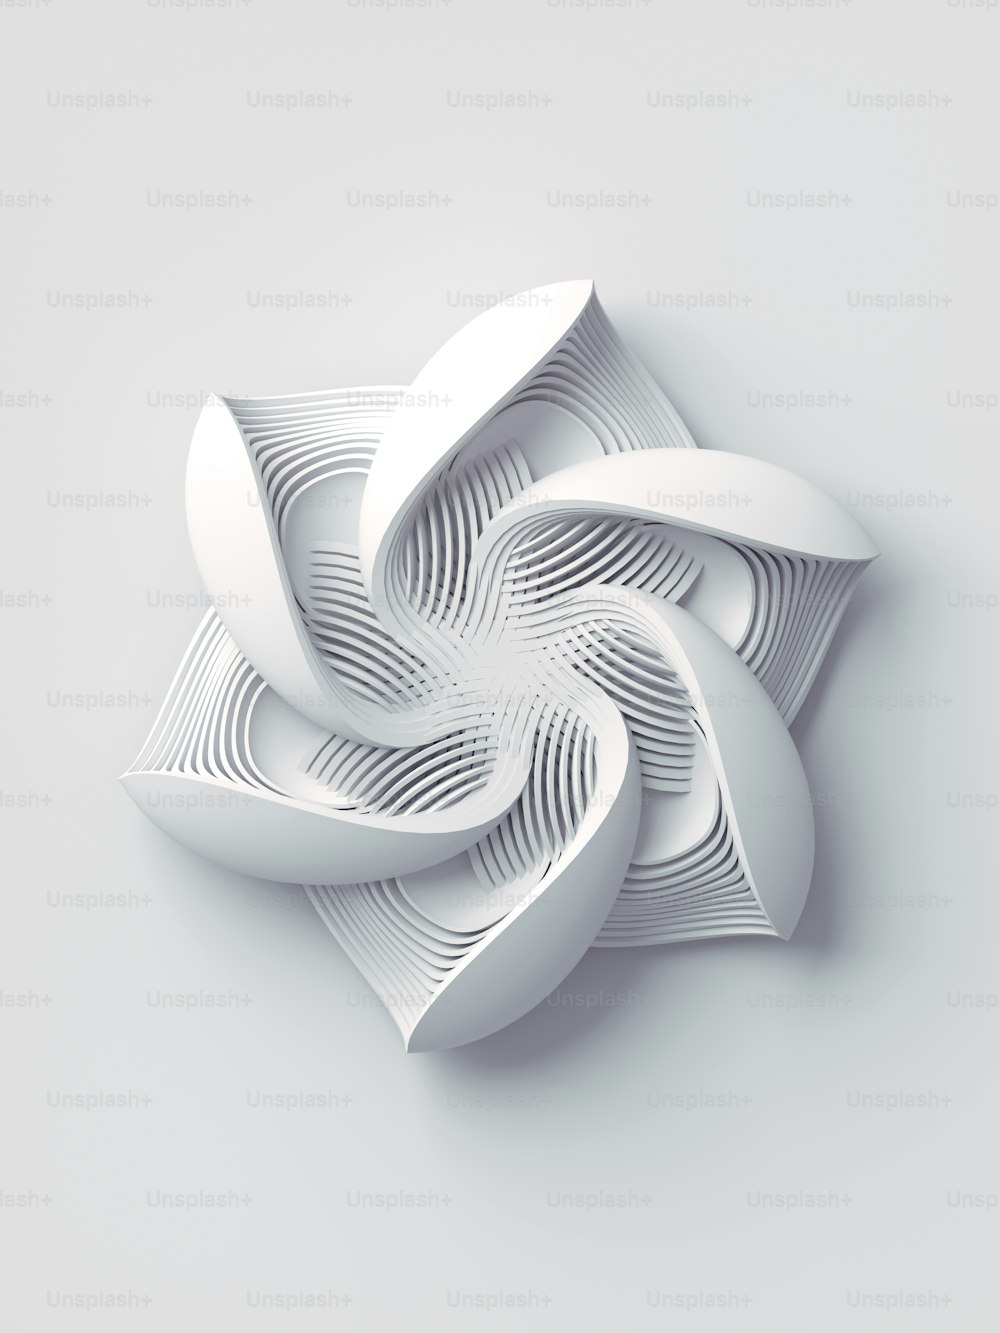 Fondo de arte de representación 3d abstracto de flores estilizadas geométricas blancas. Elemento de diseño de moda. Concepto moderno de moda minimalista. Ilustración digital